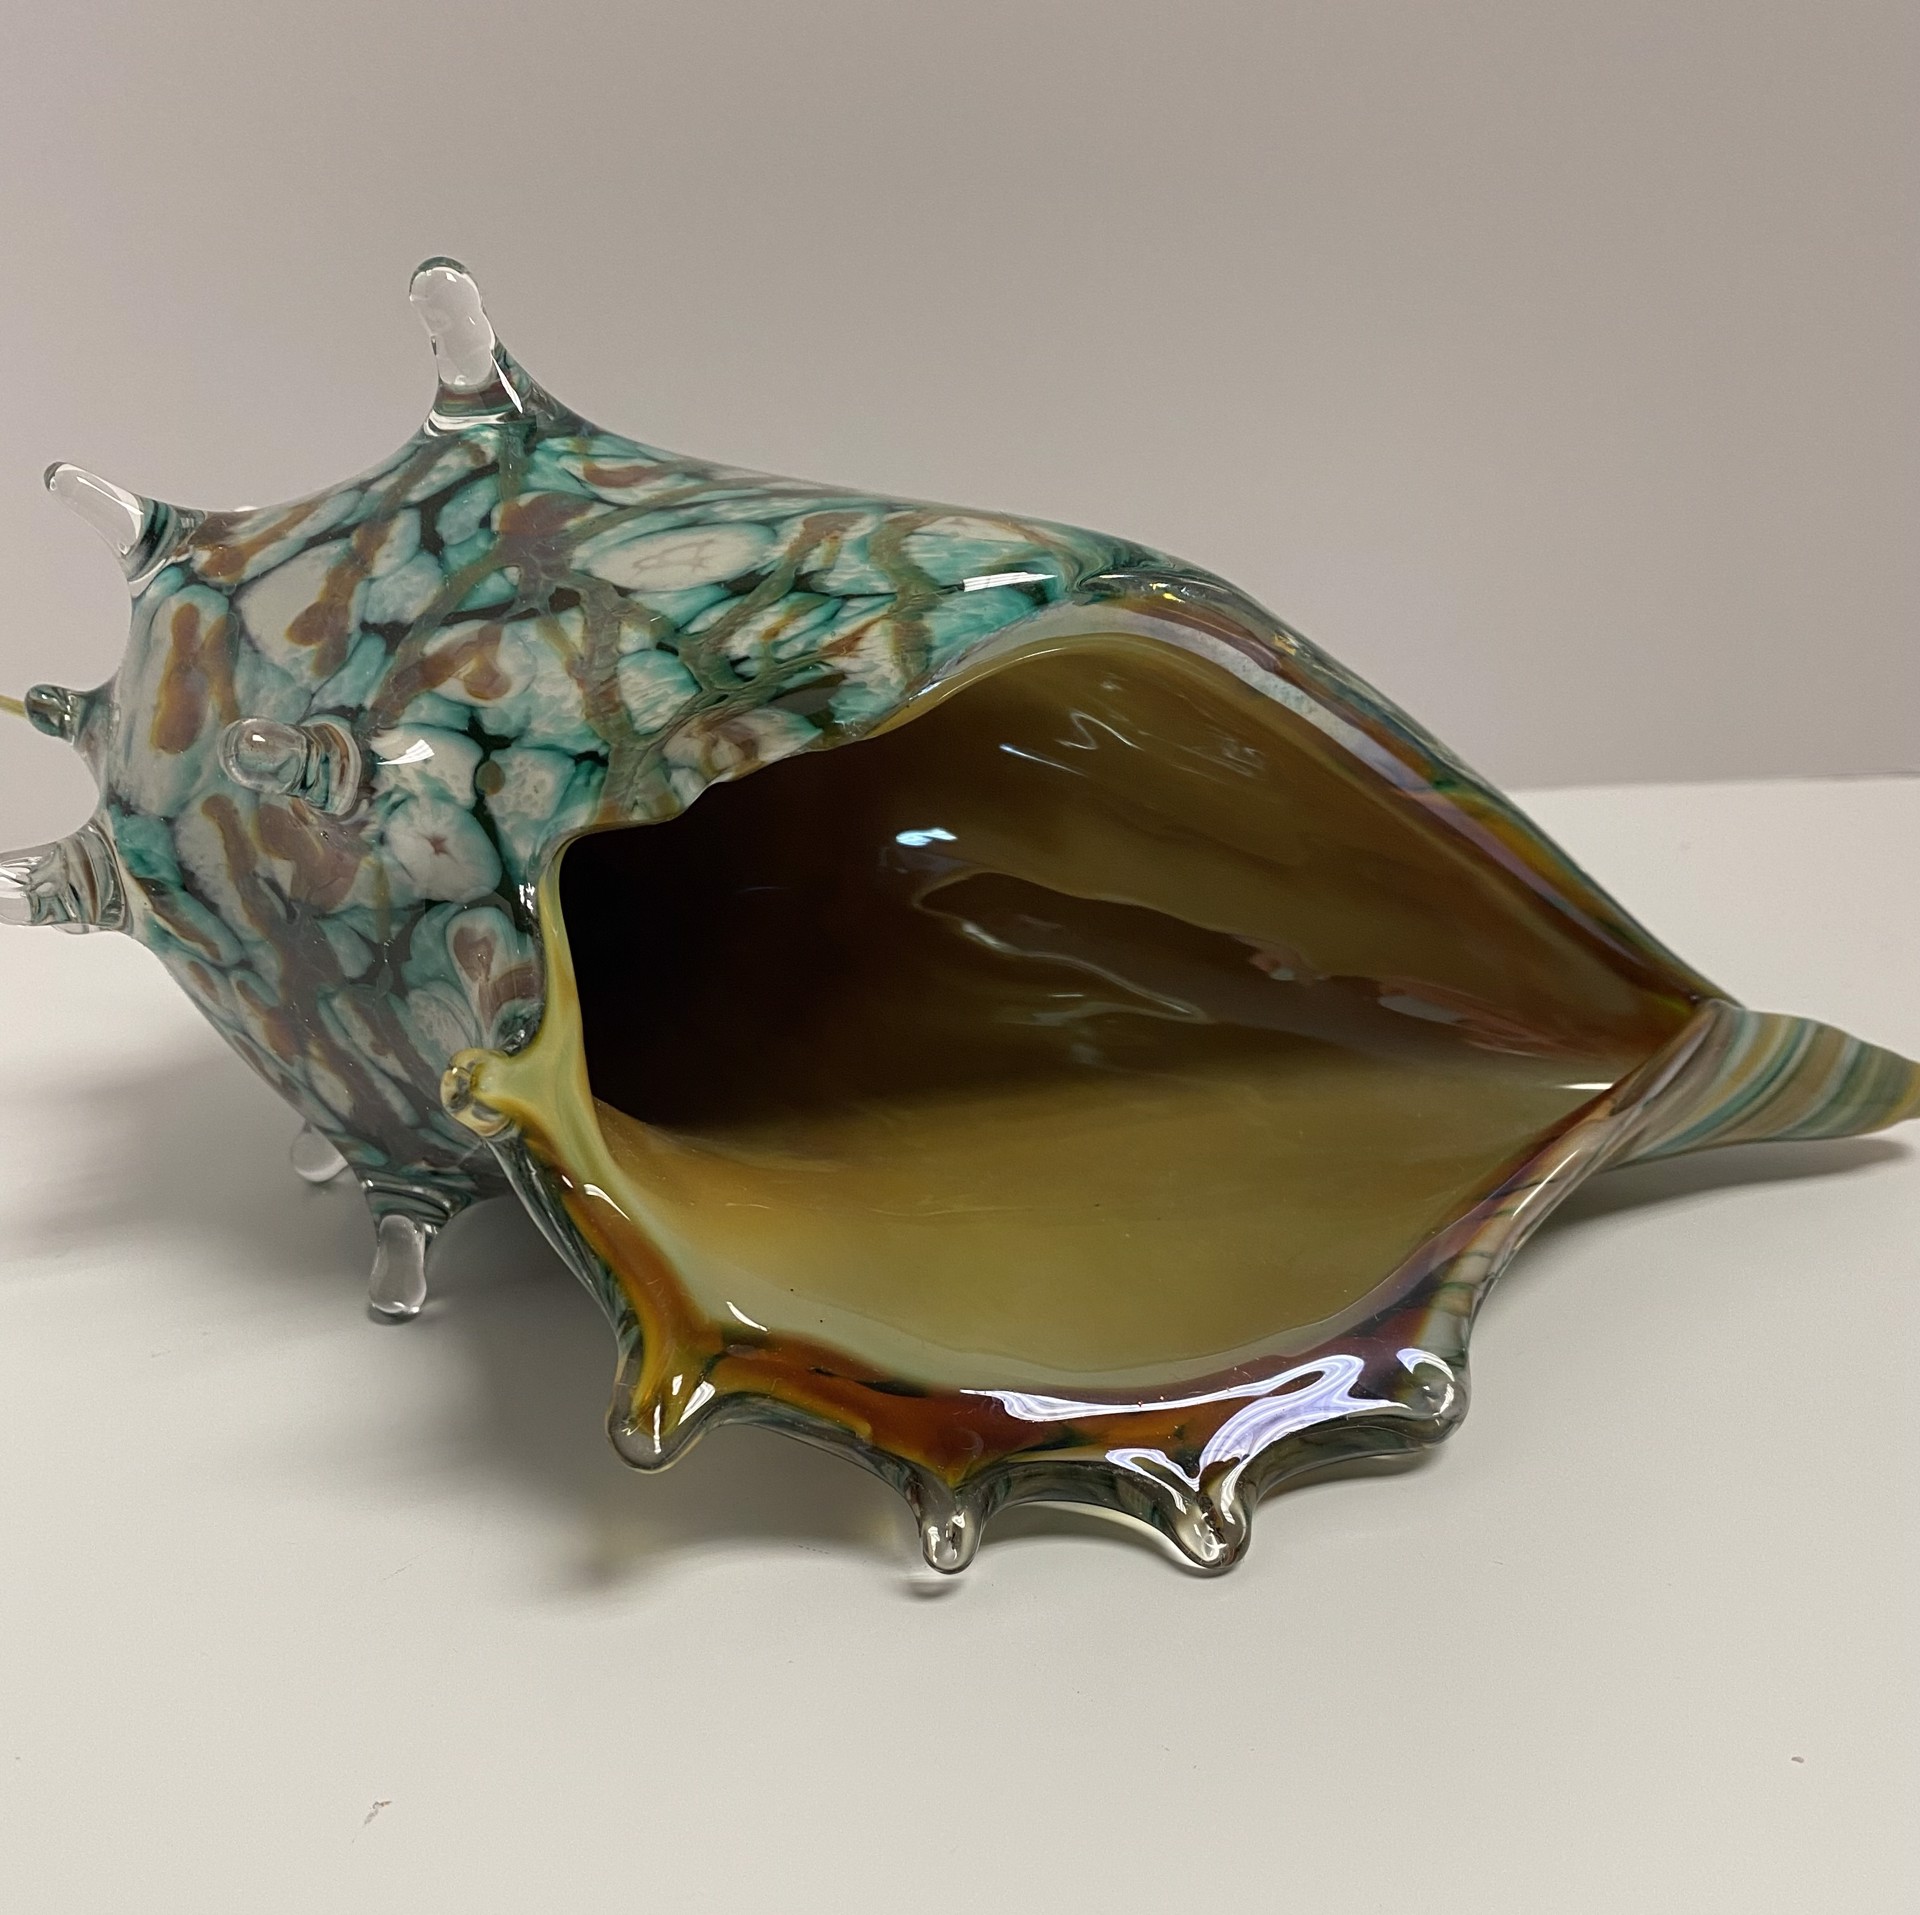 Shell I by Seattle Glassblowing Studio